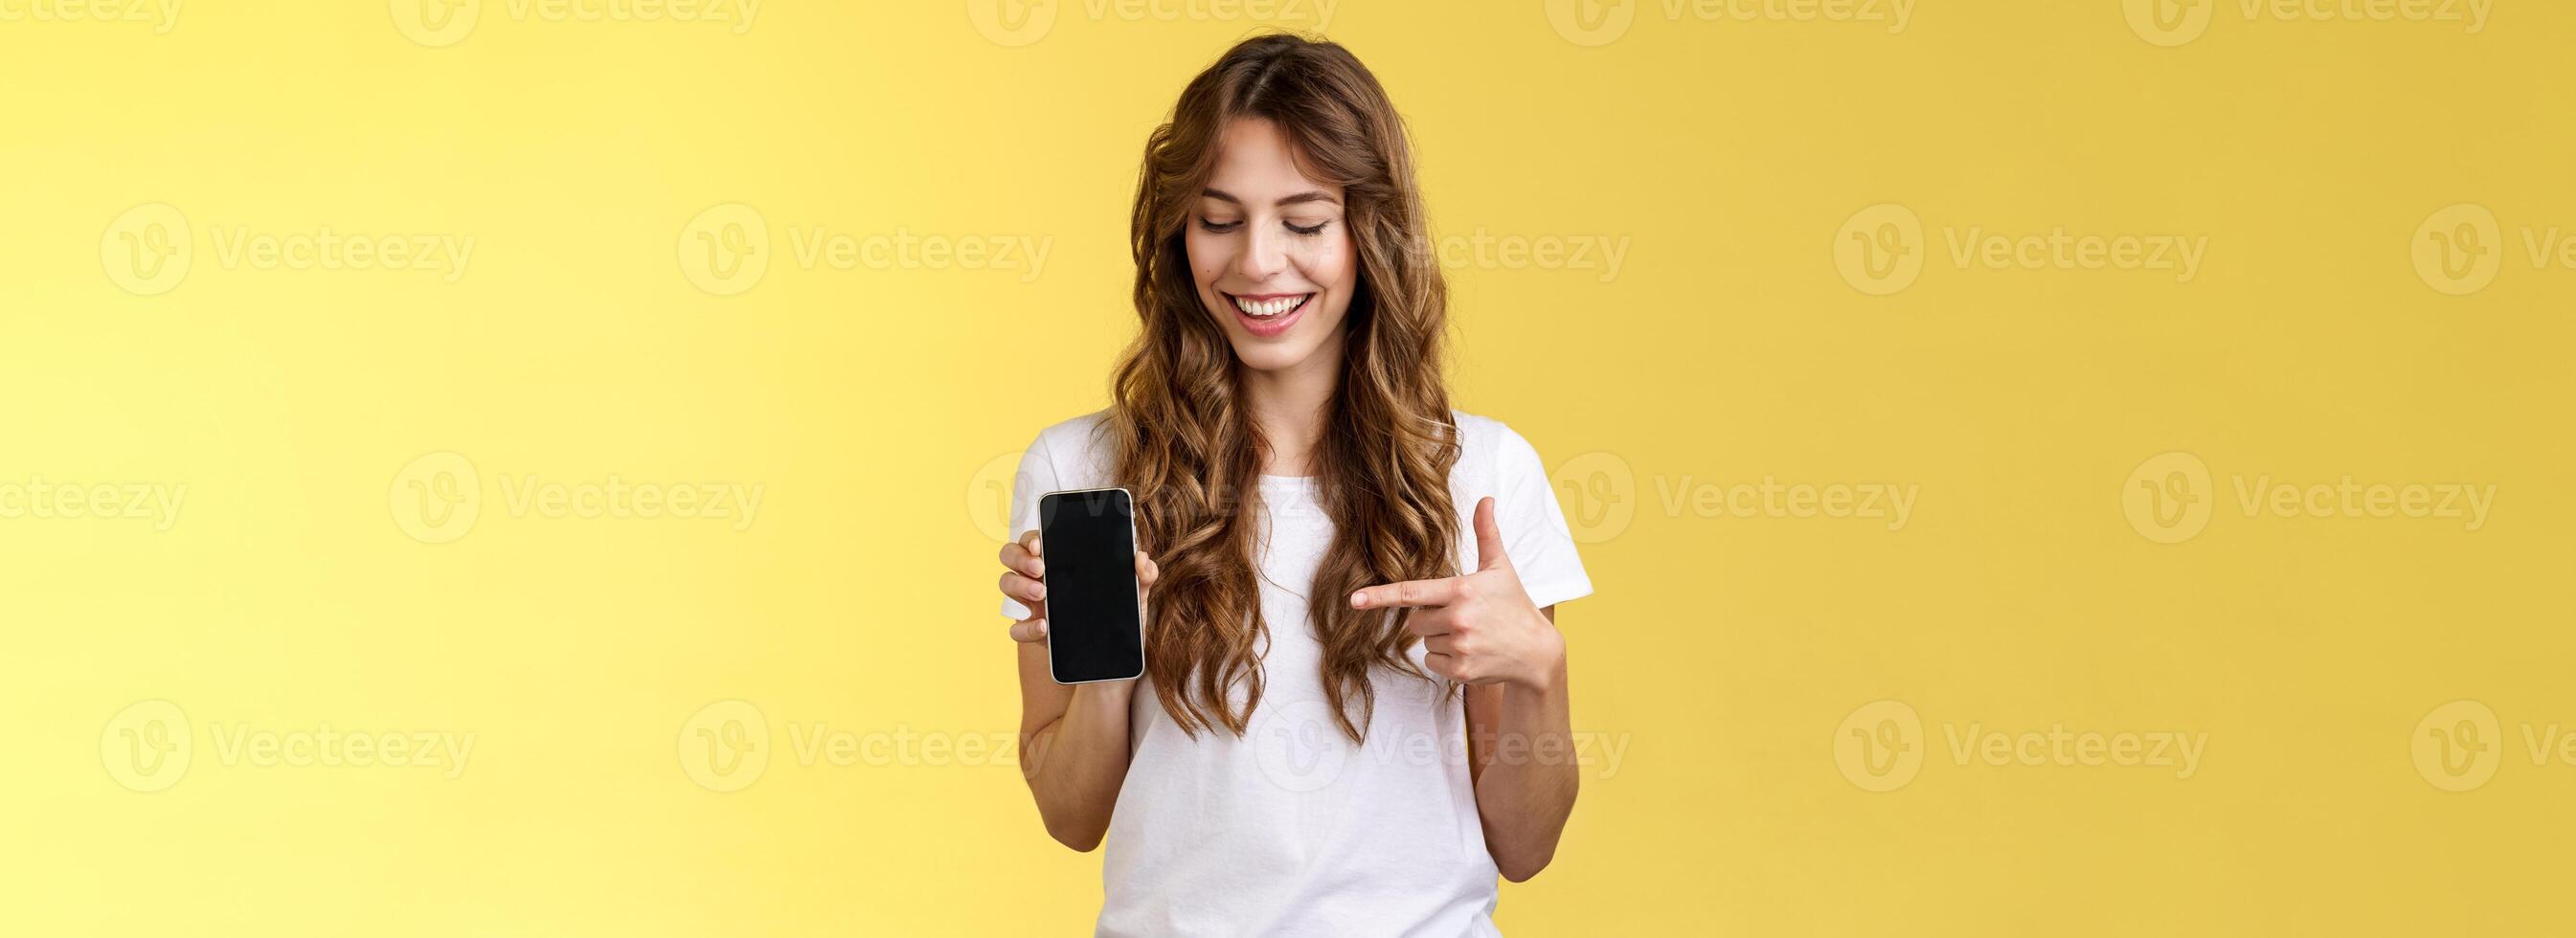 intrigado carismático feliz jovem fêmea blogueiro mostrar o que foto aplicativo usar editar social meios de comunicação perfil aguarde Smartphone olhando apontando índice dedo Móvel telefone em branco tela sorridente divertido